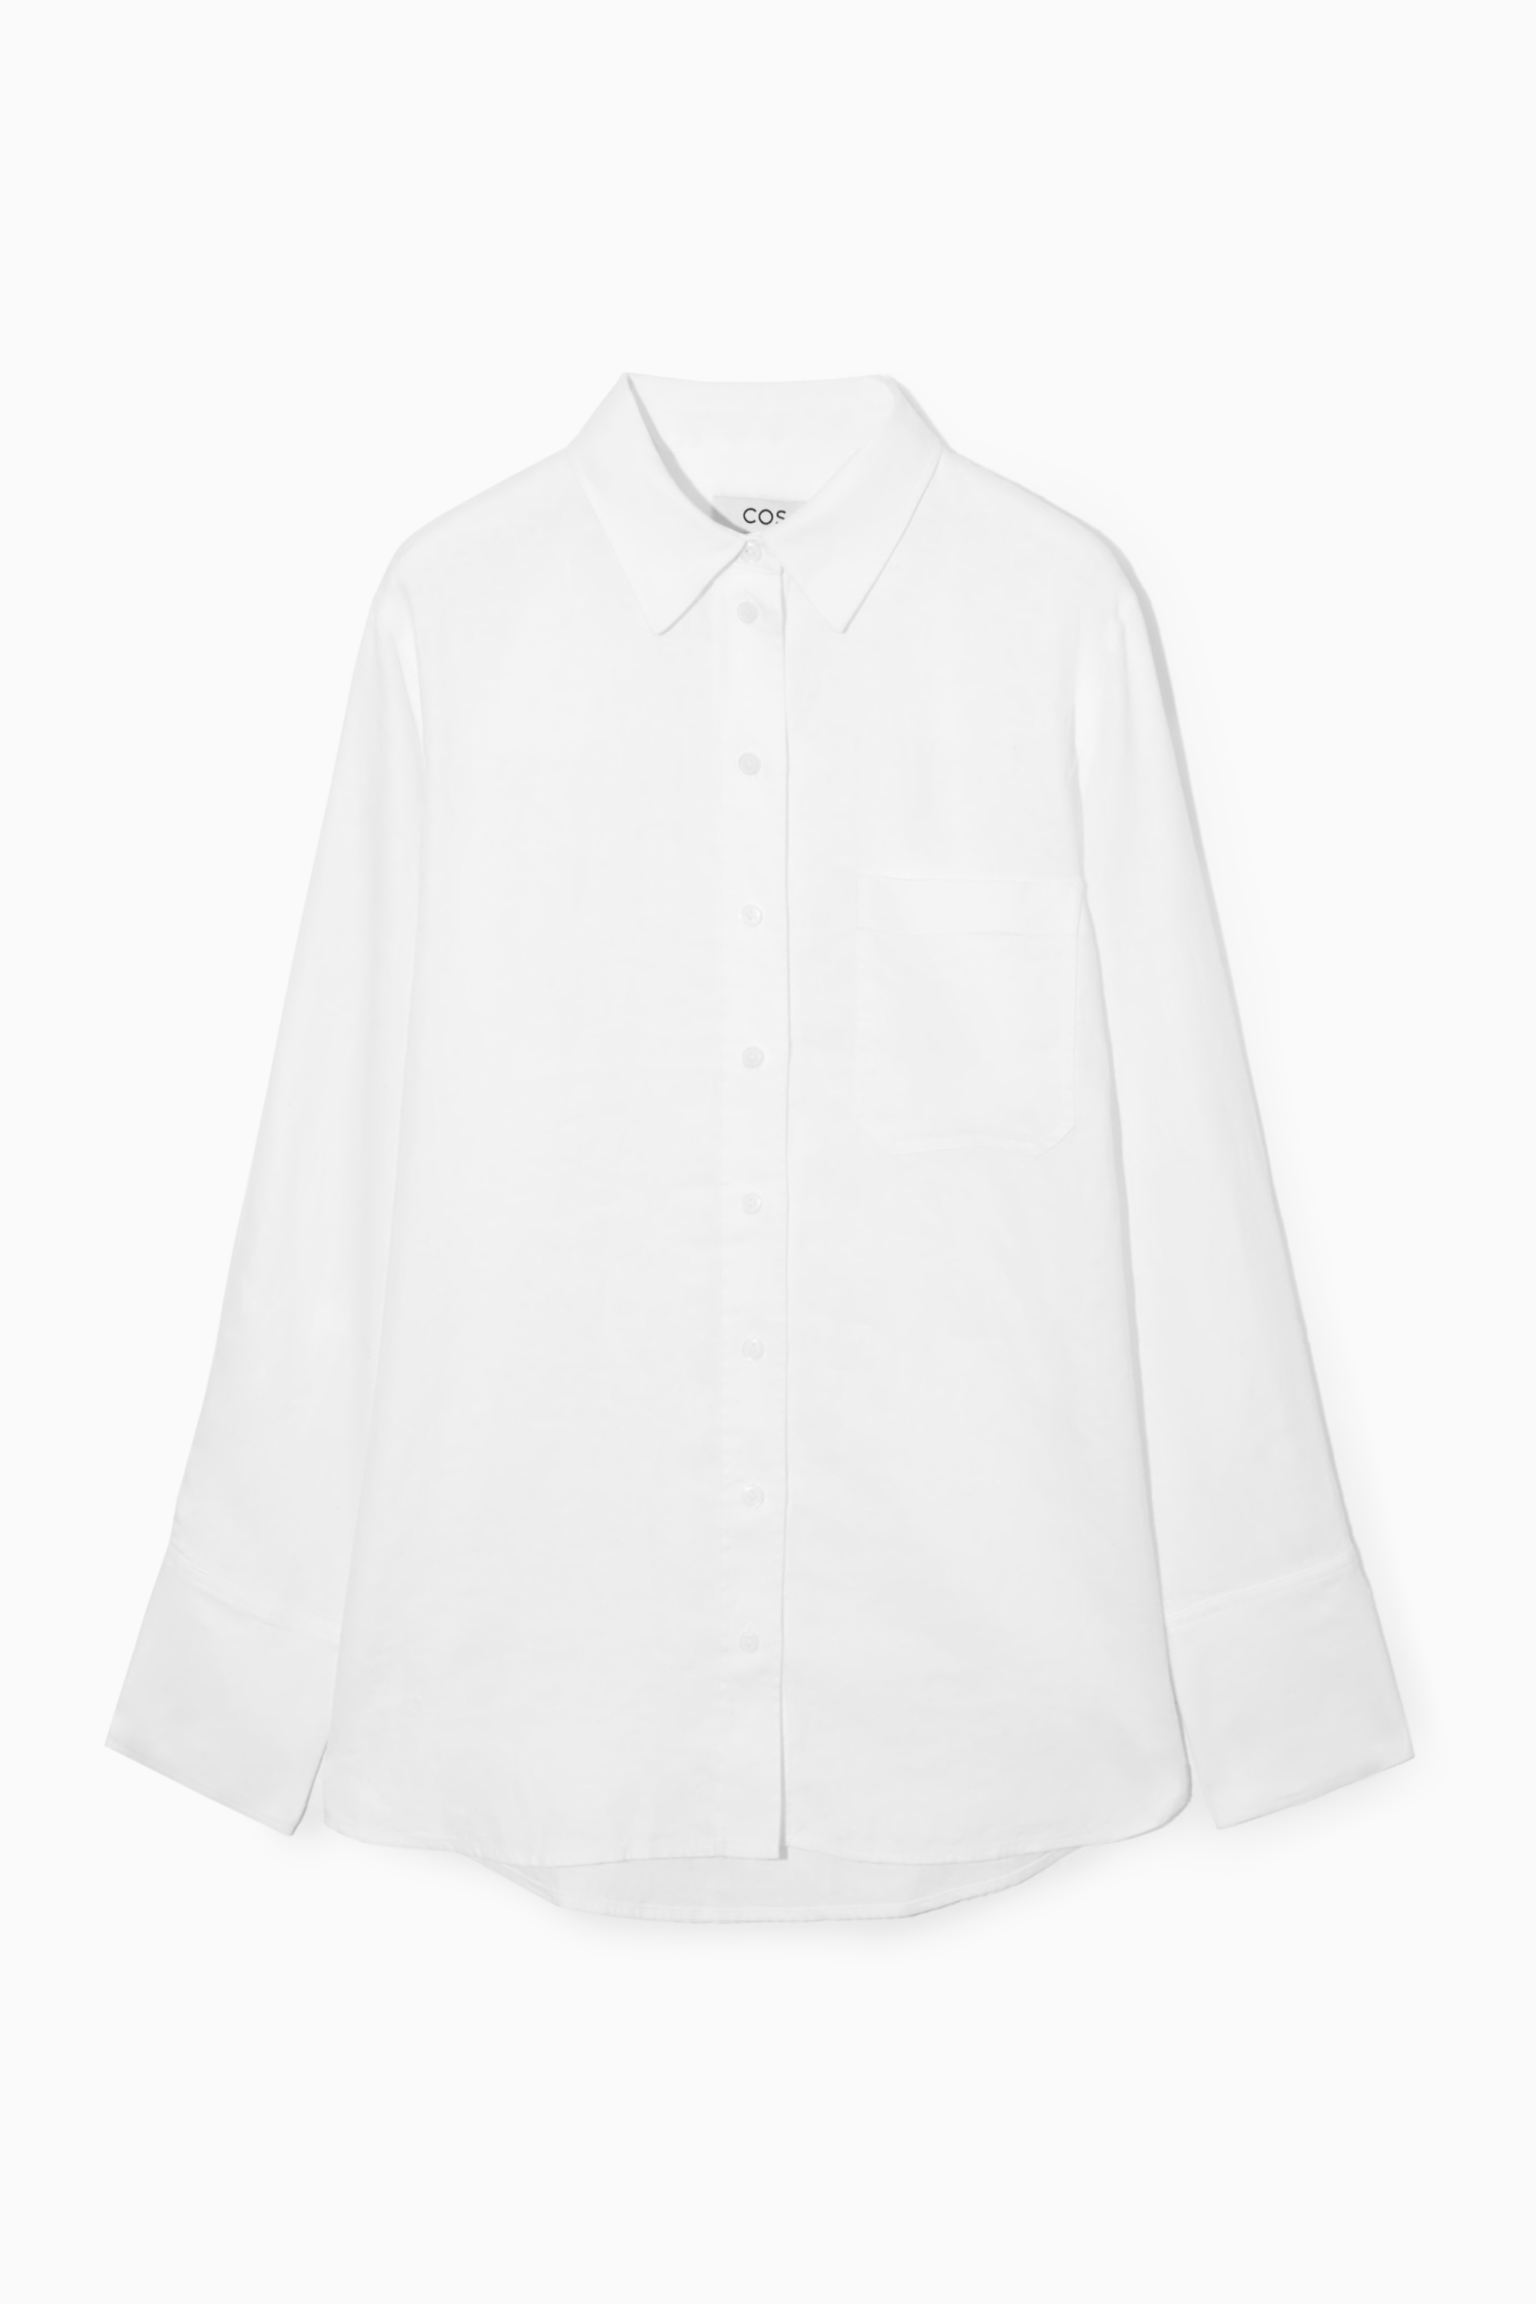 Рубашка женская COS 1163633004 белая 44 EU (доставка из-за рубежа)